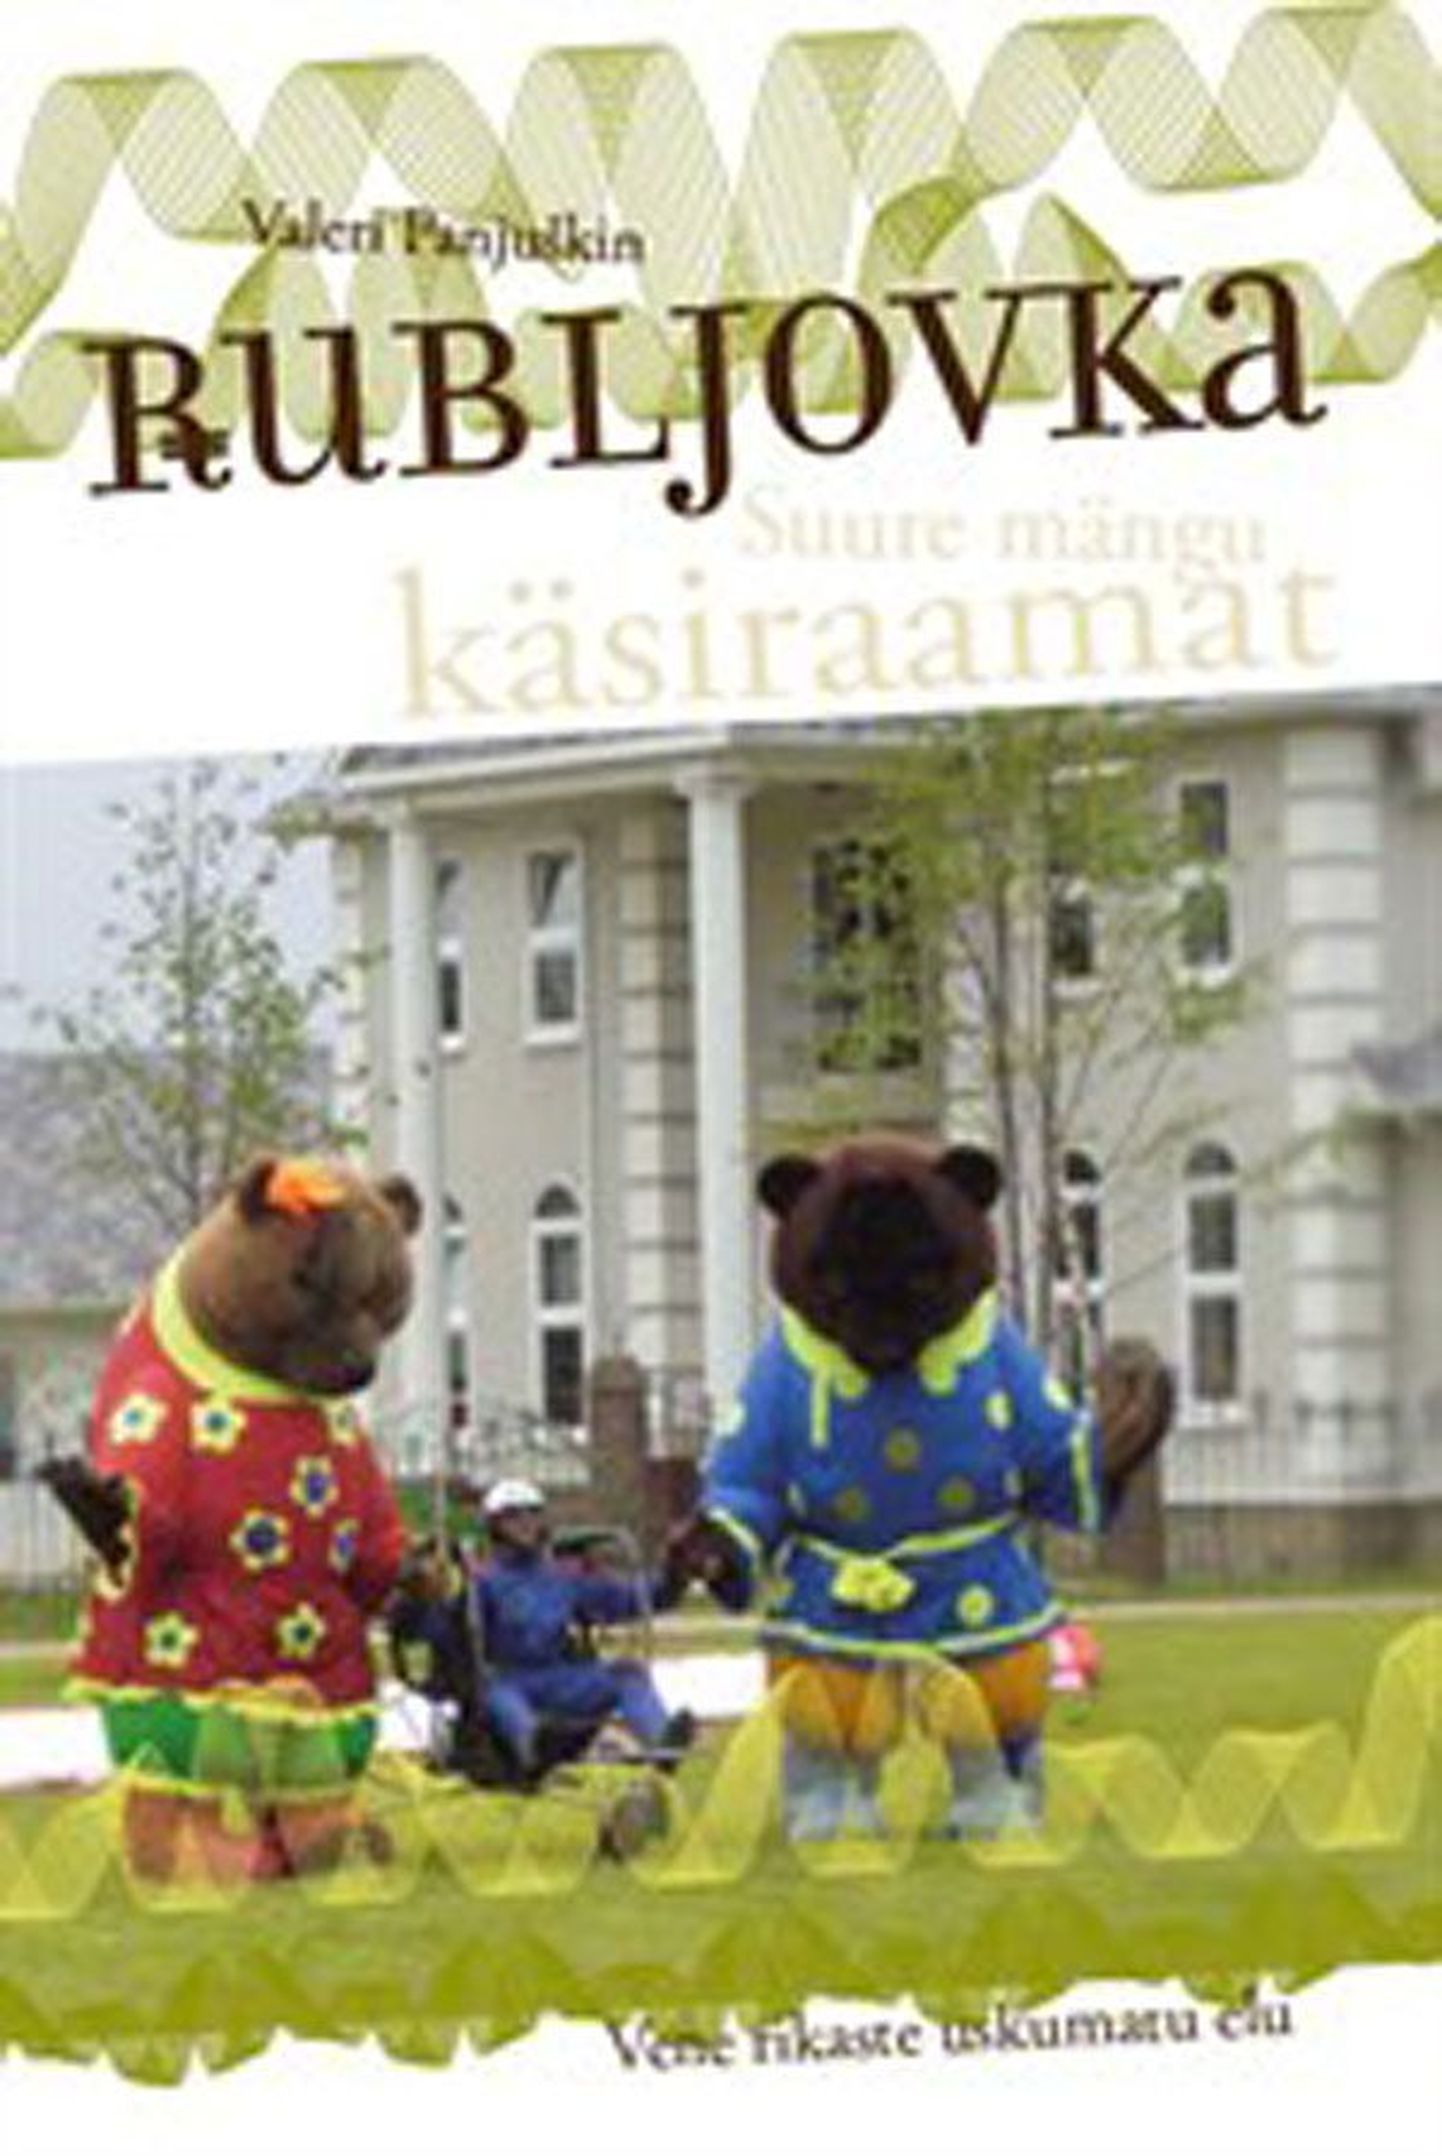 Raamat
Valeri Panjuškin
«Rubljovka. Suure mängu käsiraamat»
tõlkinud 
Ülar Lauk
229 lk